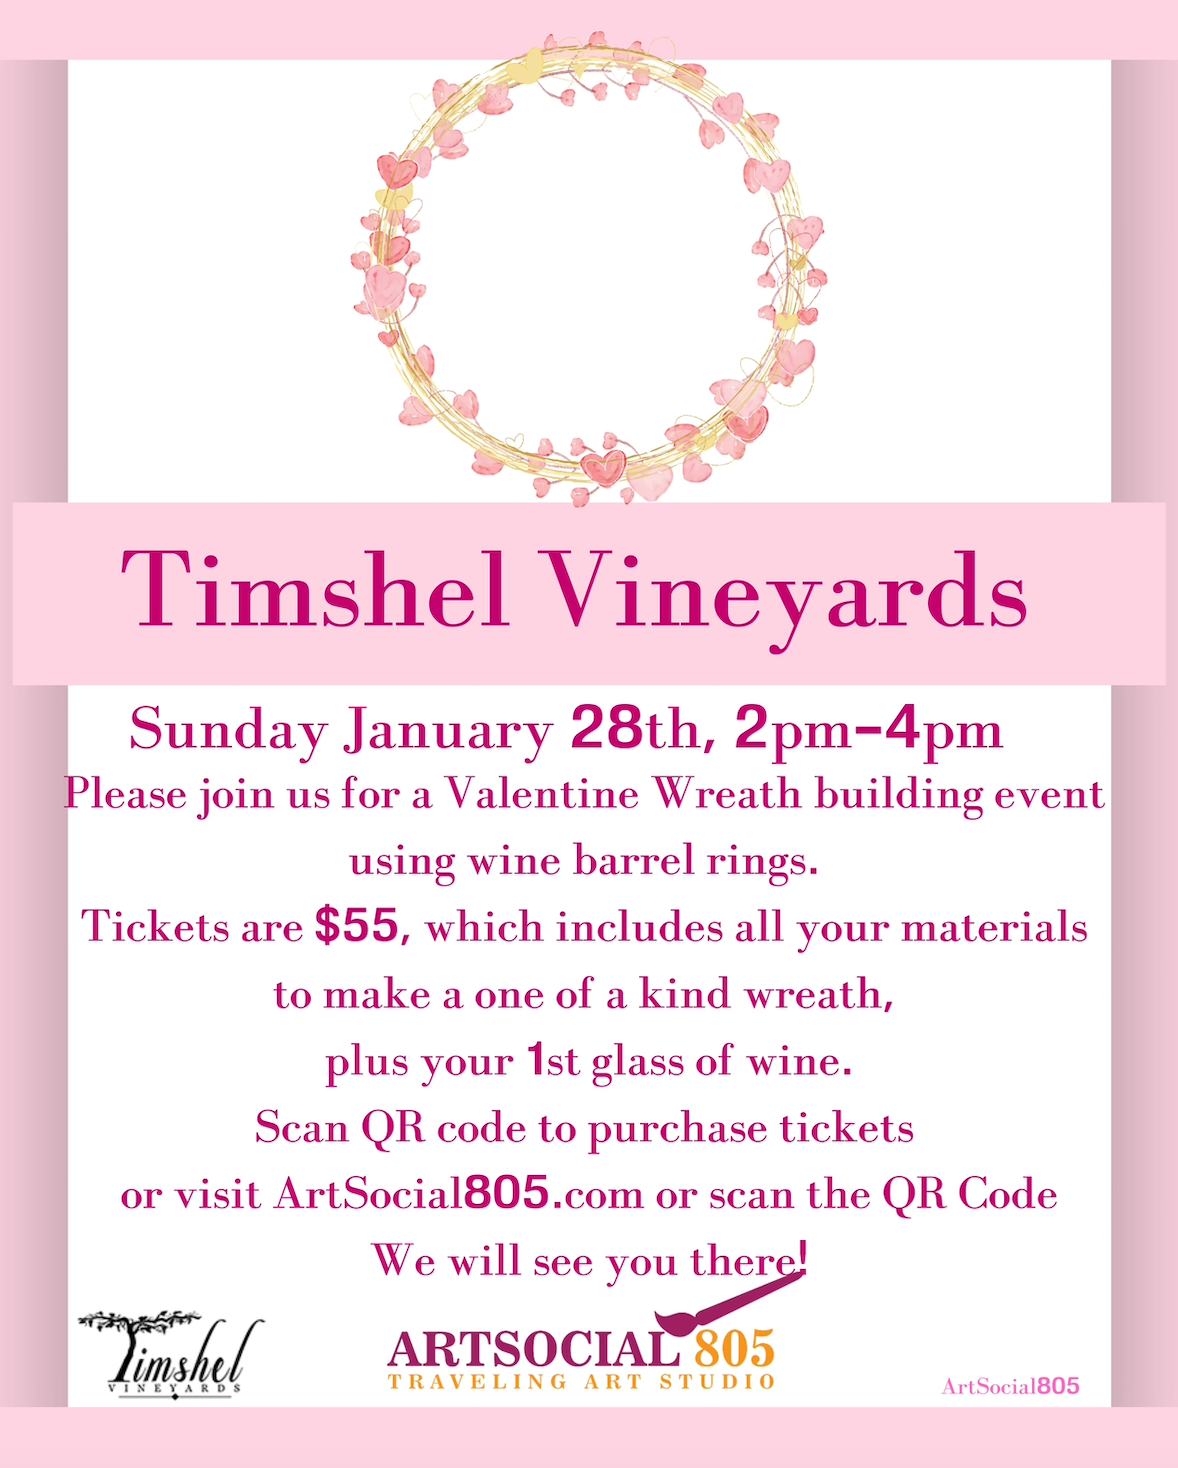 Timshel Vineyards Valentine Wine Barrel Ring Wreath Event